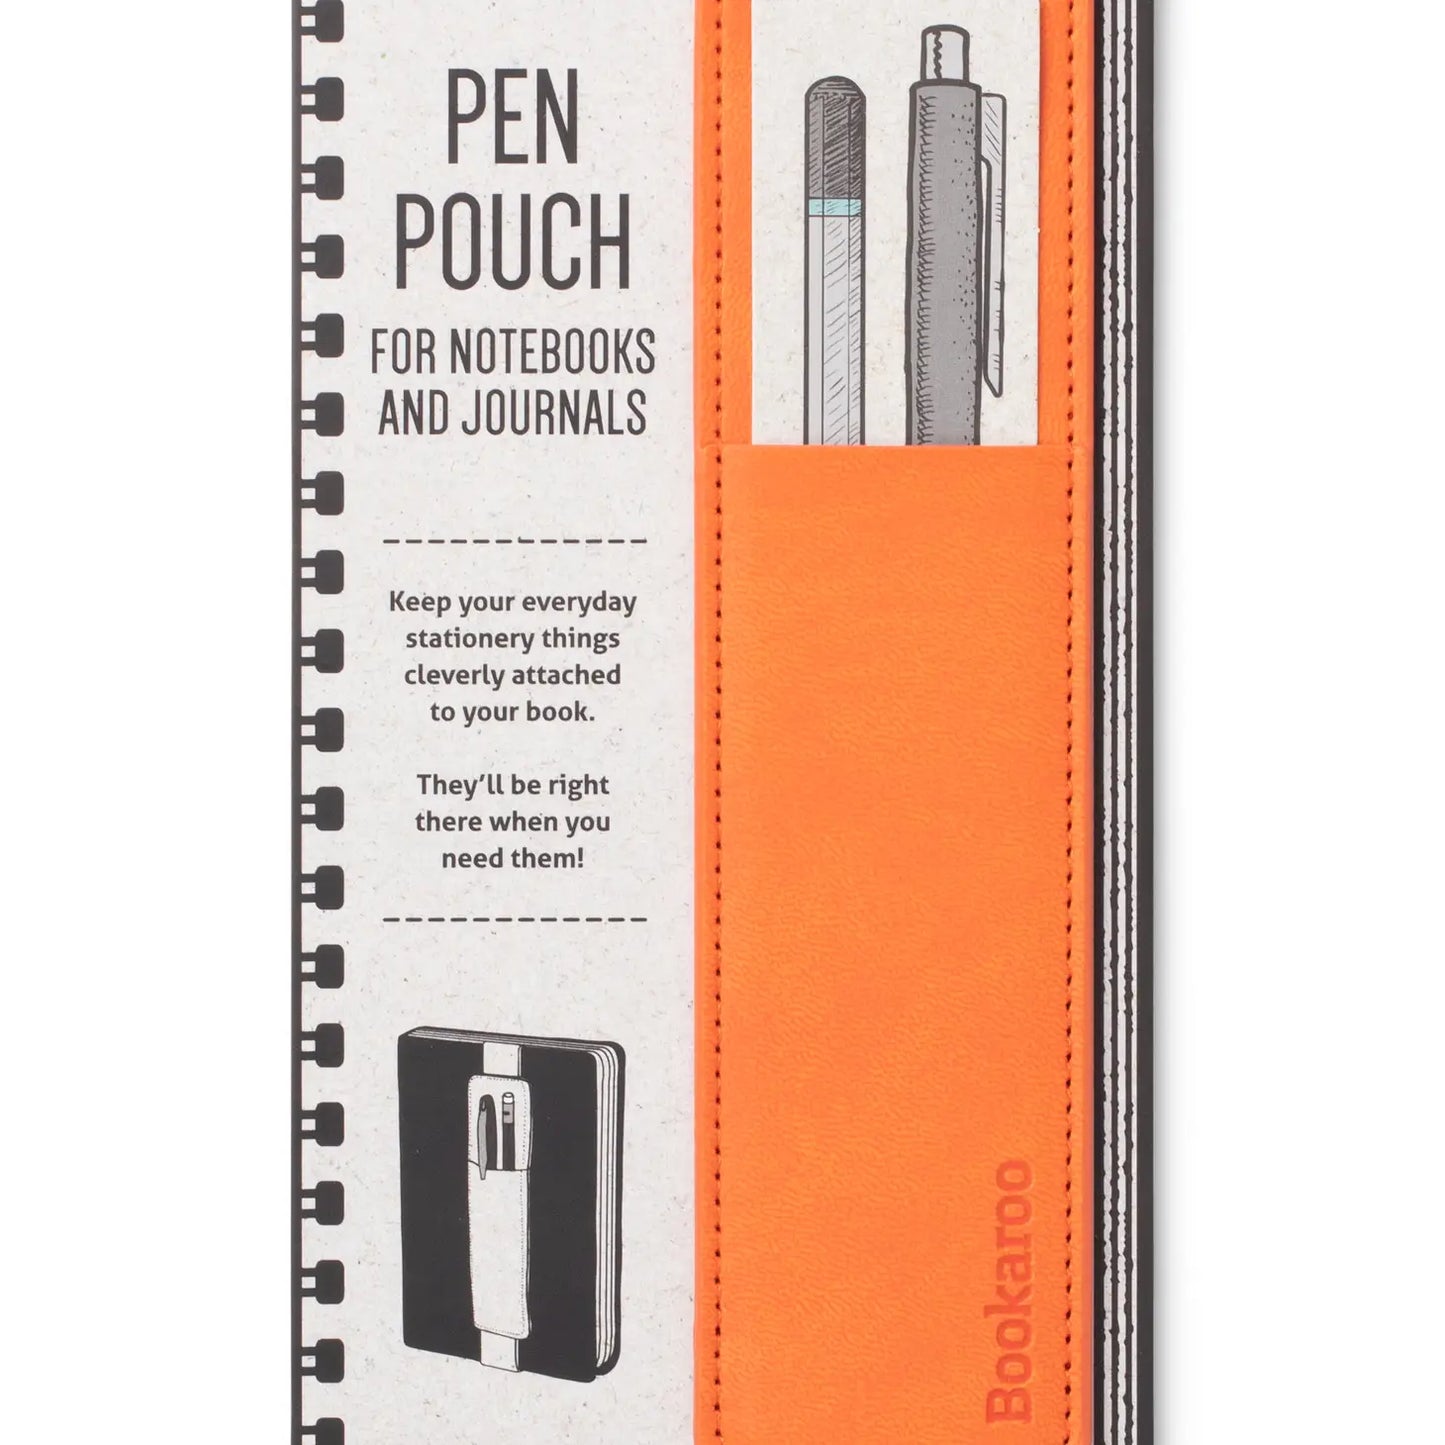 Bookaroo Pen Pouch